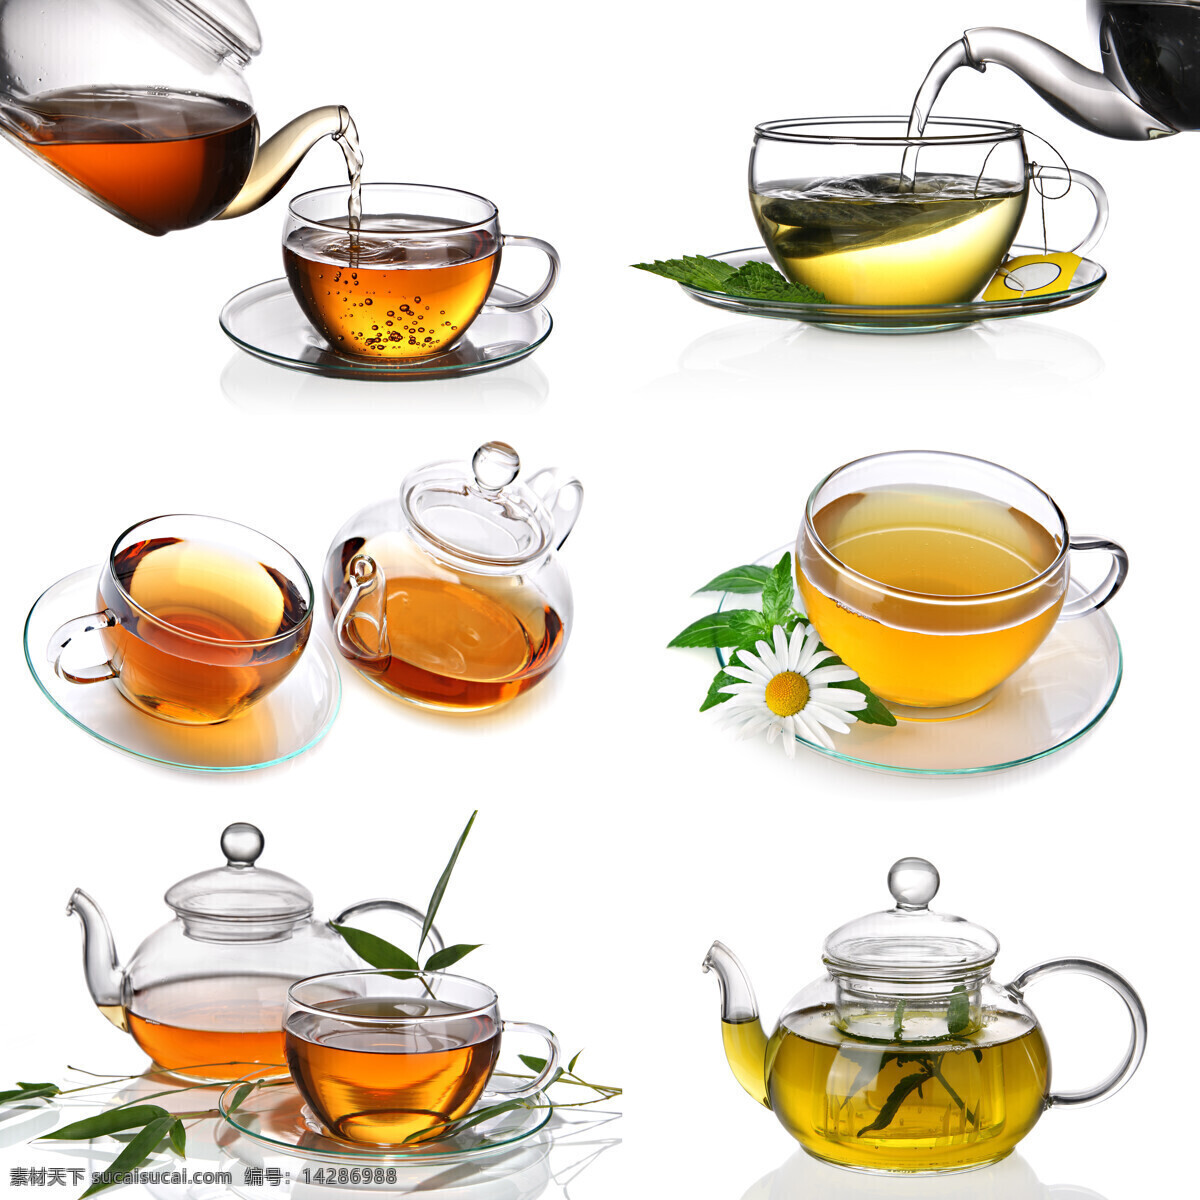 透明 杯子 里 花草茶 美味 清新 绿茶 生活百科 餐饮美食